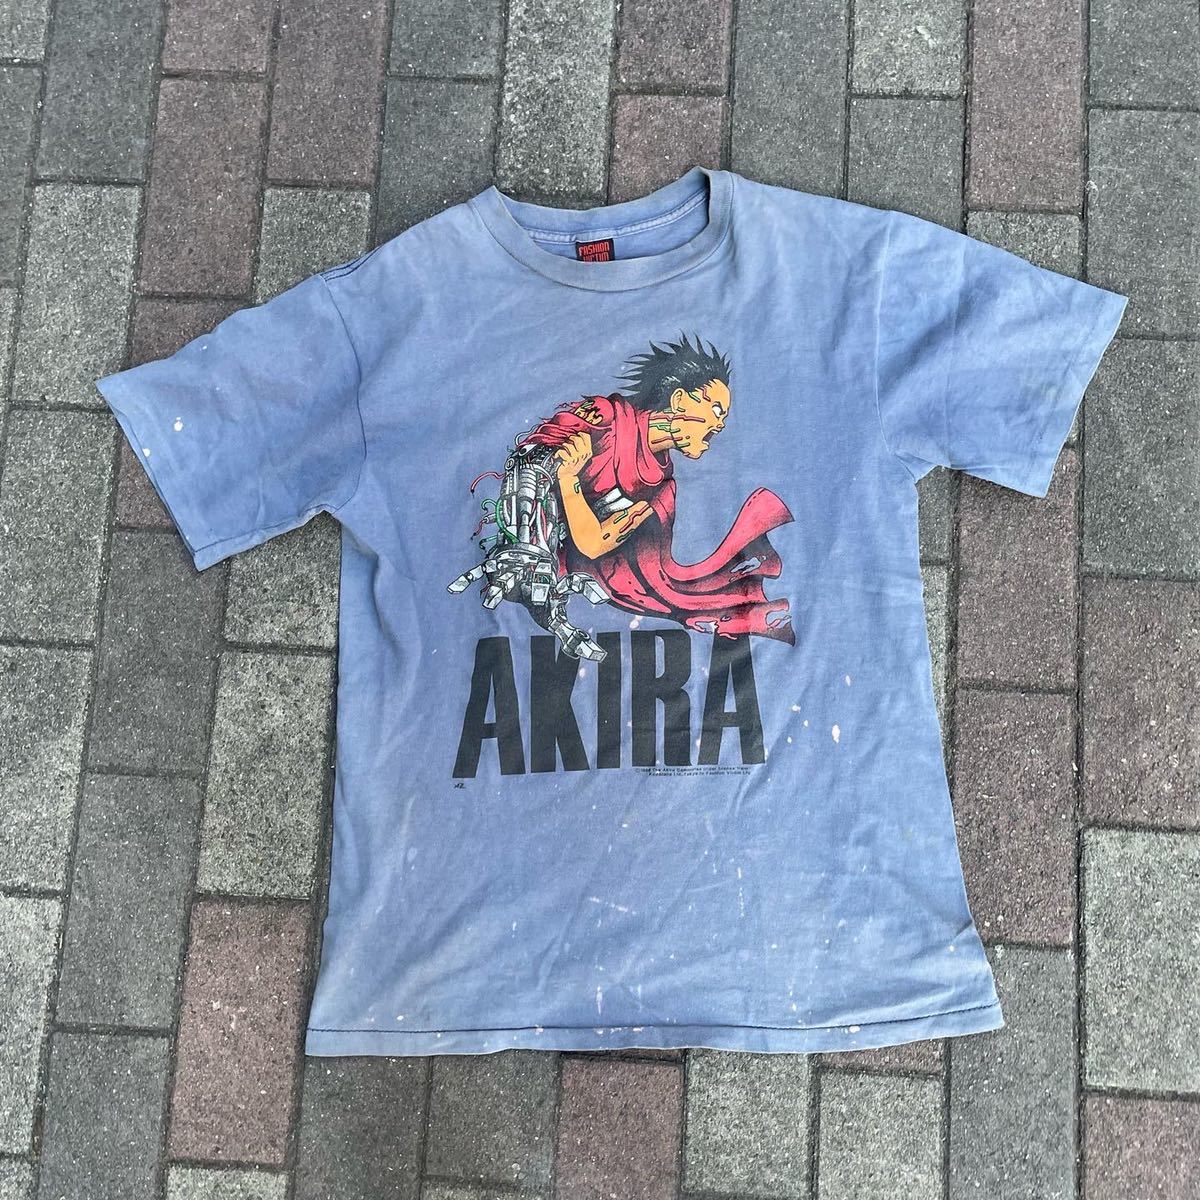 2021セール アキラ Tシャツ vintage AKIRA victim Fashion アニメTシャツ フルーツオブザルーム アナーキックアジャストメント イラスト、キャラクター